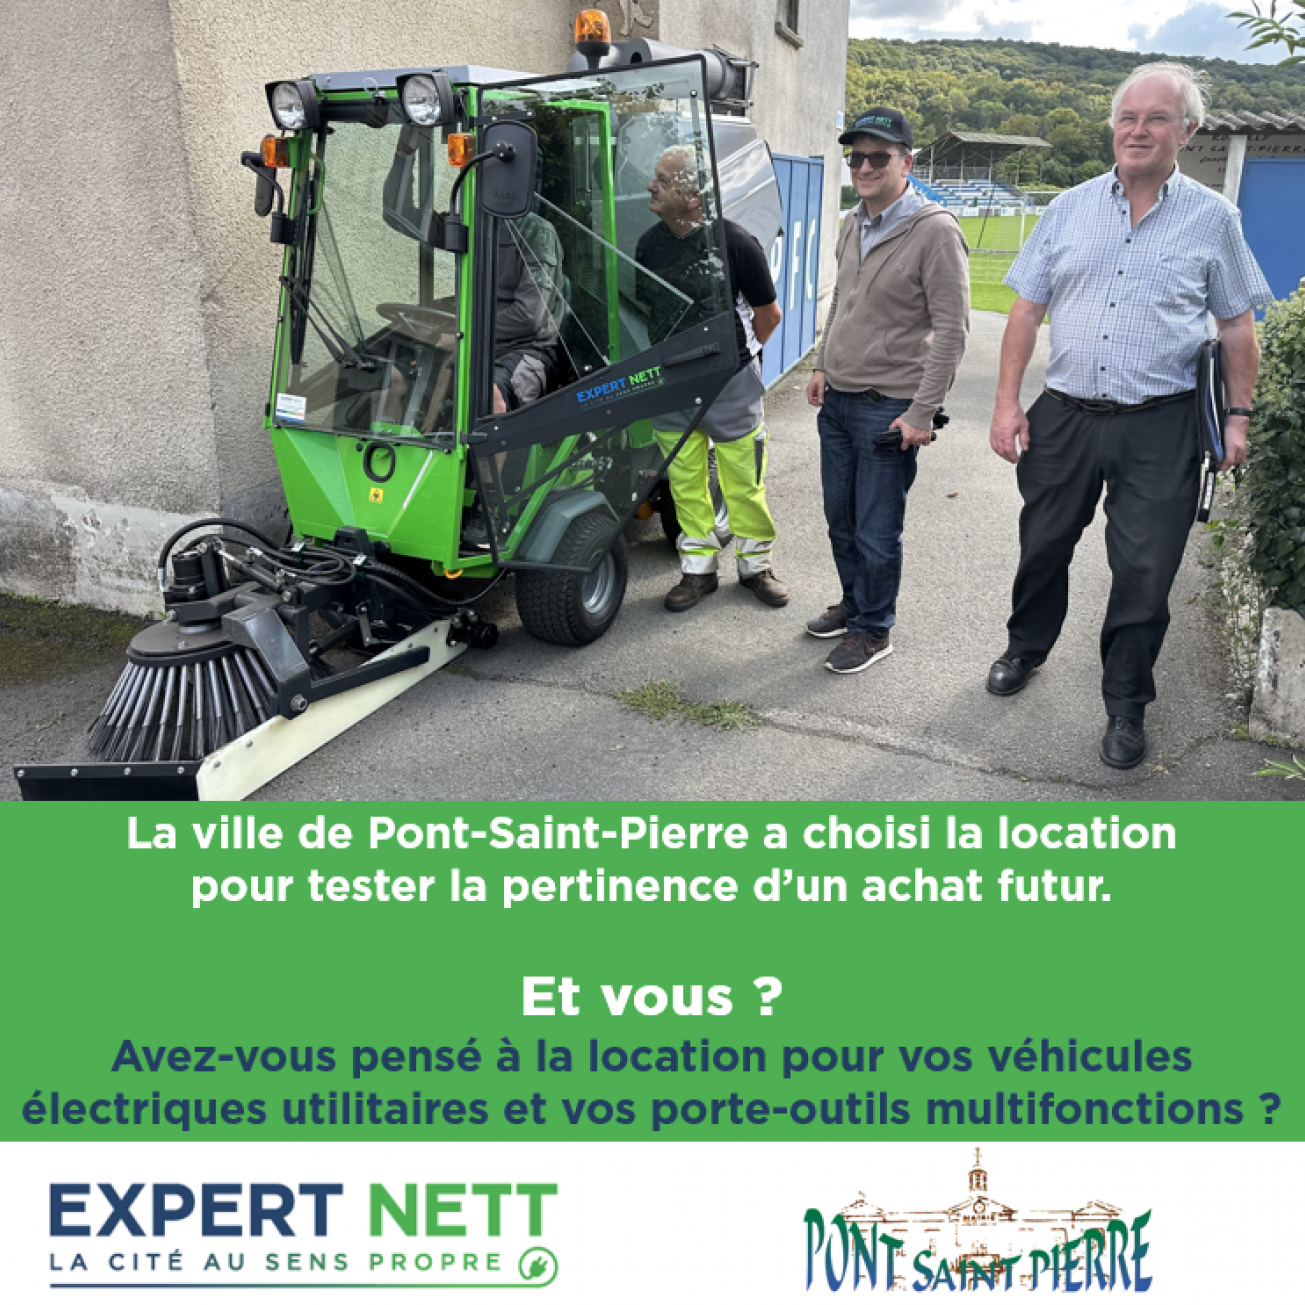 La ville de Pont-Saint-Pierre choisit la location full service pour tester le porte-outils Park Ranger 2150 d’Egholm en version balayage et désherbage.